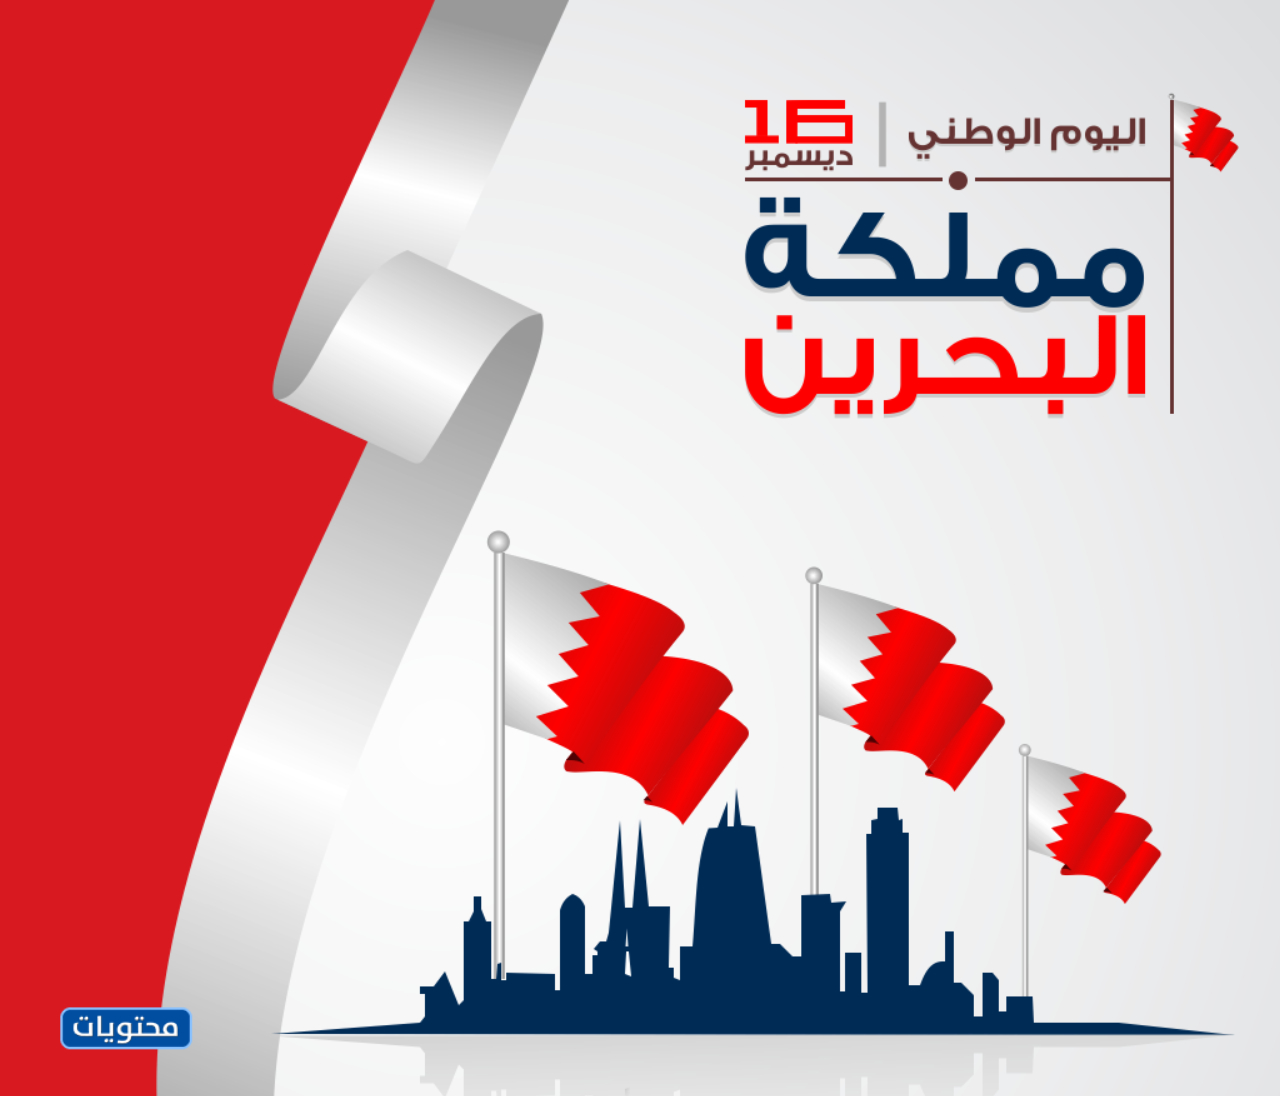 صور تهنئة بمناسبة اليوم الوطني البحريني